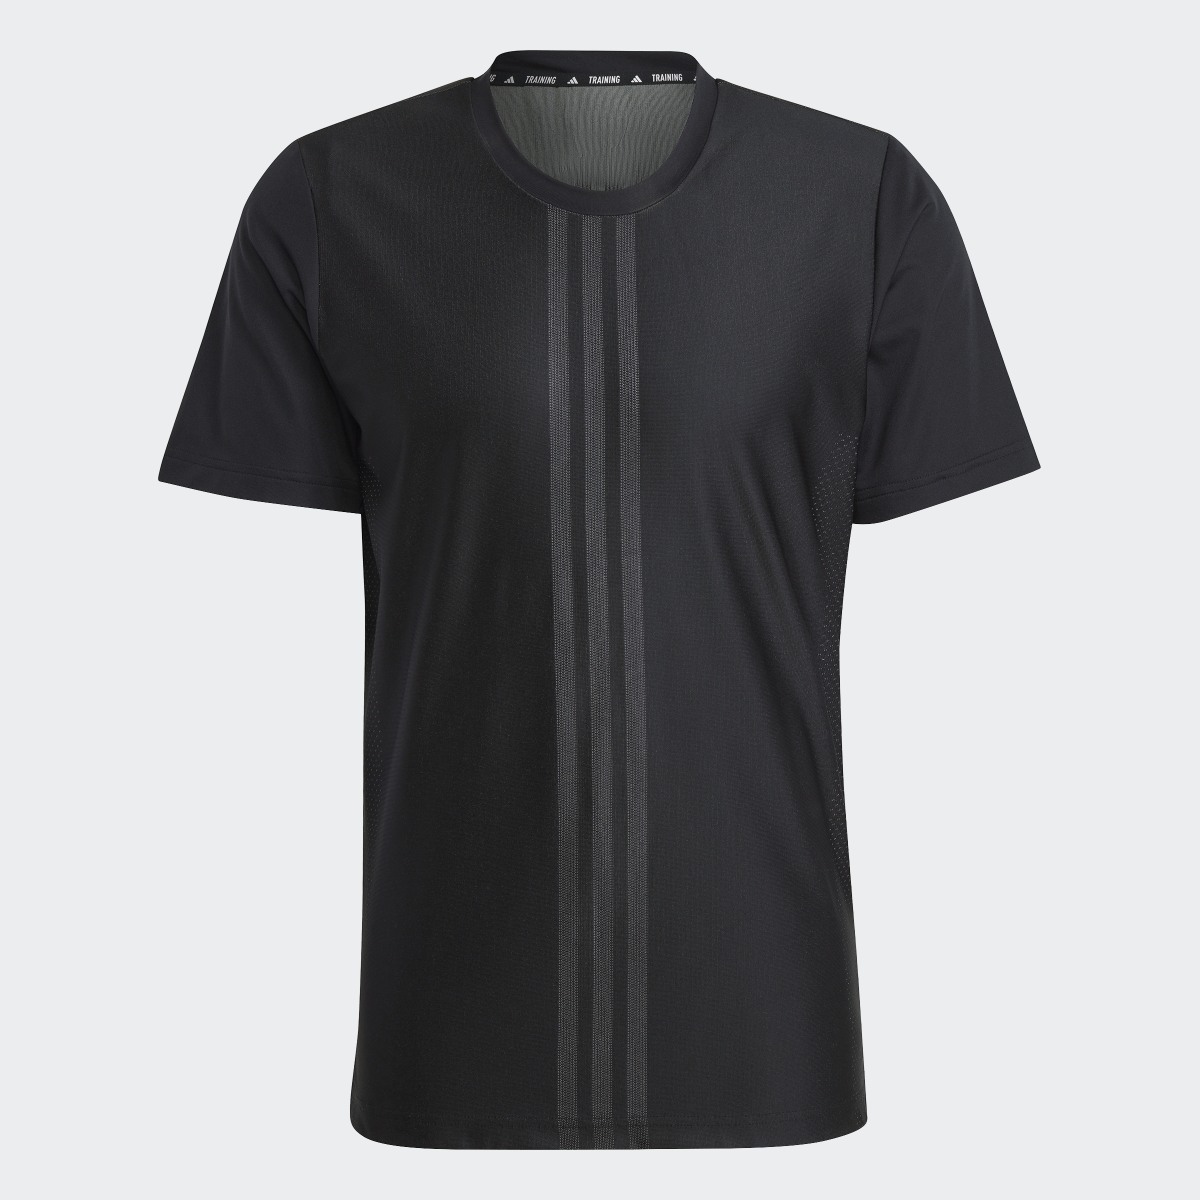 Adidas Koszulka HIIT Workout 3-Stripes. 5